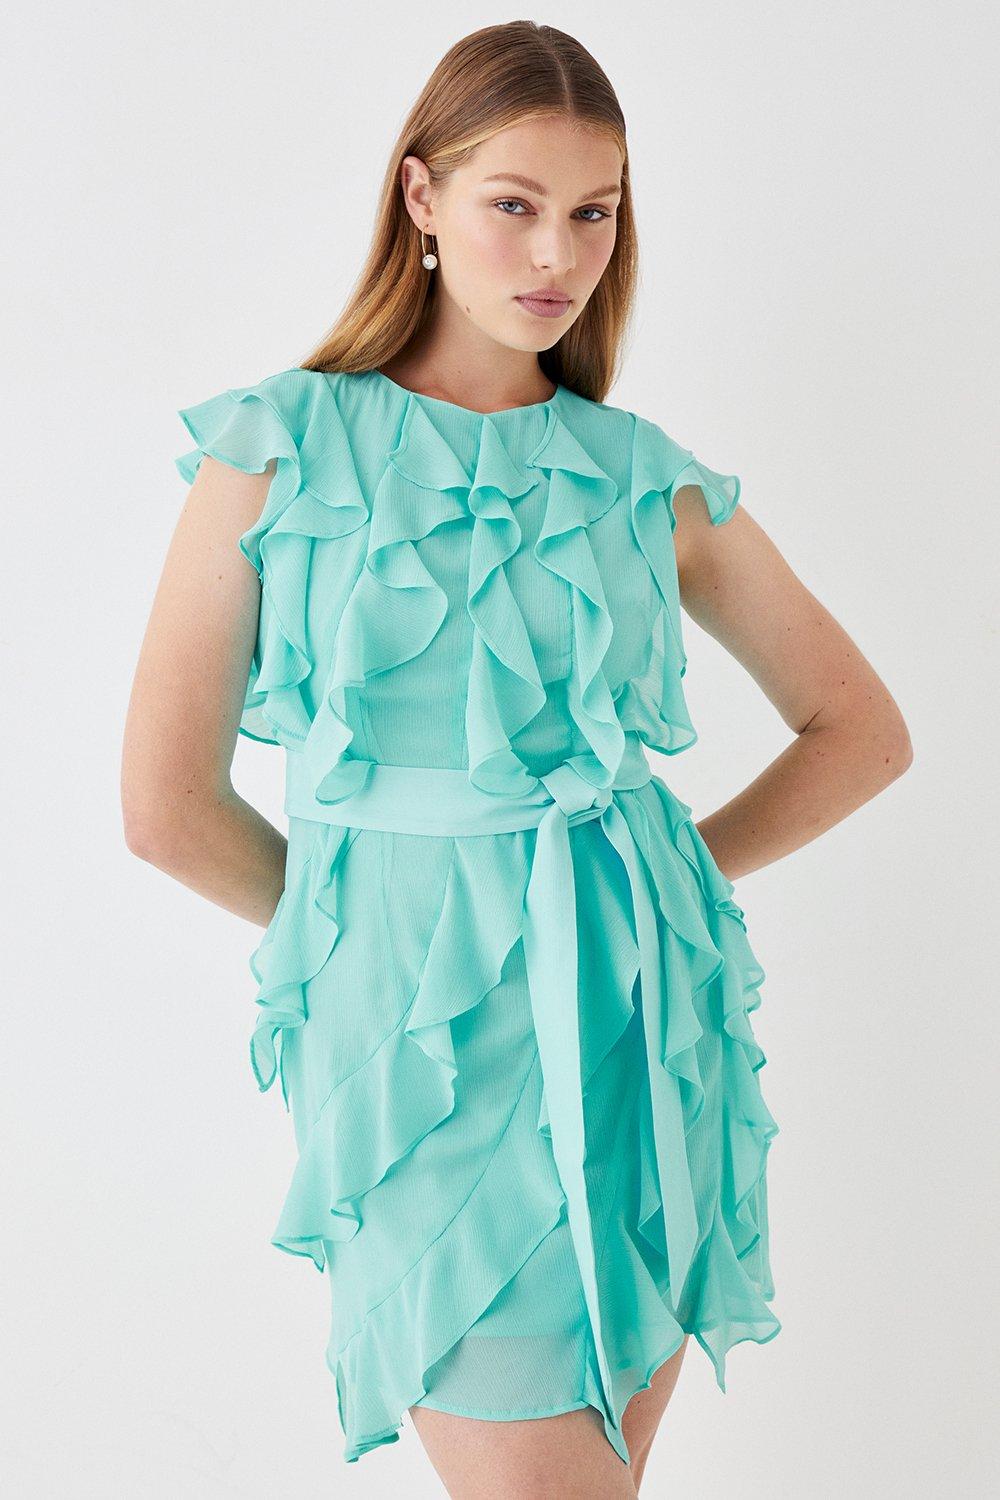 Ruffle Chiffon Belted Mini Dress - Turquoise